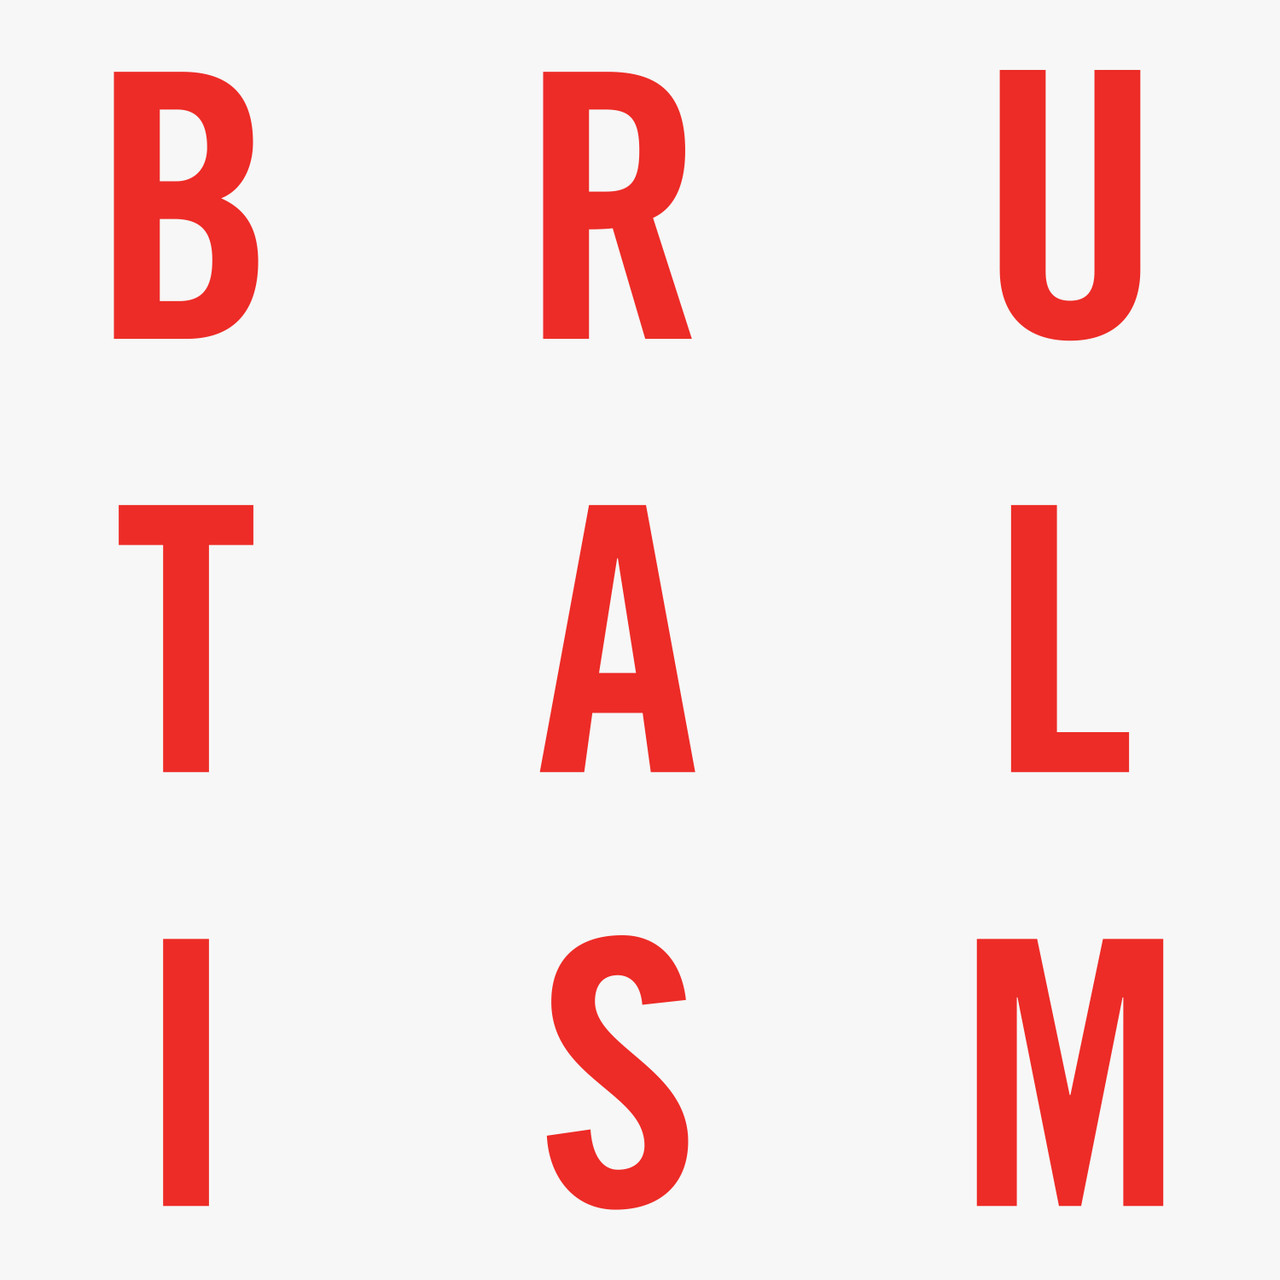 5 Years of Brutalism